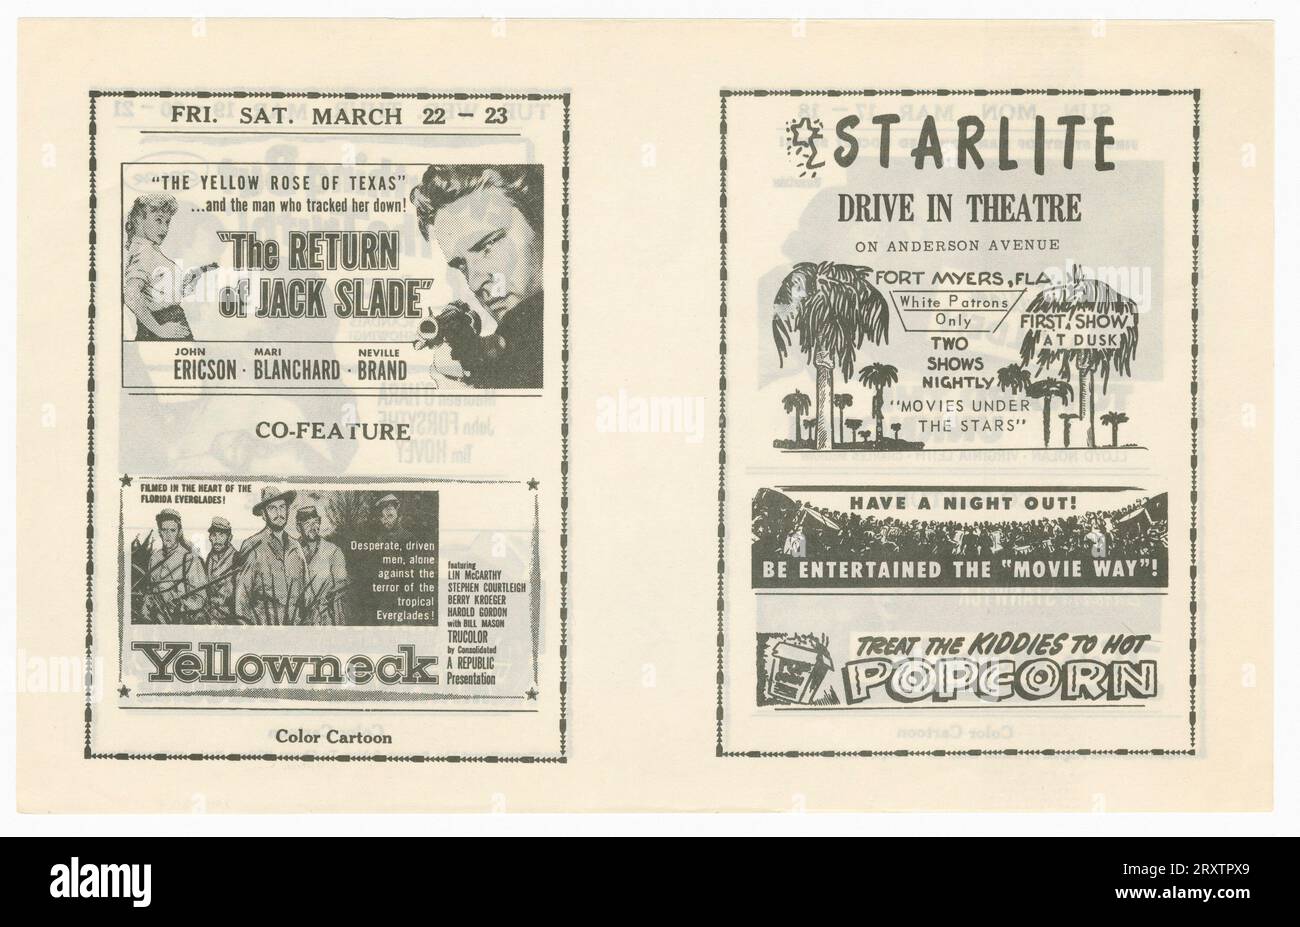 Ein Theaterflyer für das Starlite Drive in Theatre in Fort Myers, Florida. Im Flyer sind die Anzeigen für die Filme aufgeführt, die im Theater gespielt werden. Auf der Vorderseite des Flyers befindet sich eine Reklame für das Theater mit einer Zeichnung von Palmen und einem Text mit der AUFSCHRIFT [ White Patrons Only/ TWO/ SHOWS/NIGHTLY/'MOVIES UNDER THE STAR]. Daneben gibt es Werbung für die Filme „The Return of Jack Slade“ und „Yellowneck“. Auf der Rückseite des Flyers finden sich Werbungen für die Filme „Towards the Unknown“, „These Wilder Years“, „Everything but the Truth“ und „Marshals in Disquise“. Stockfoto